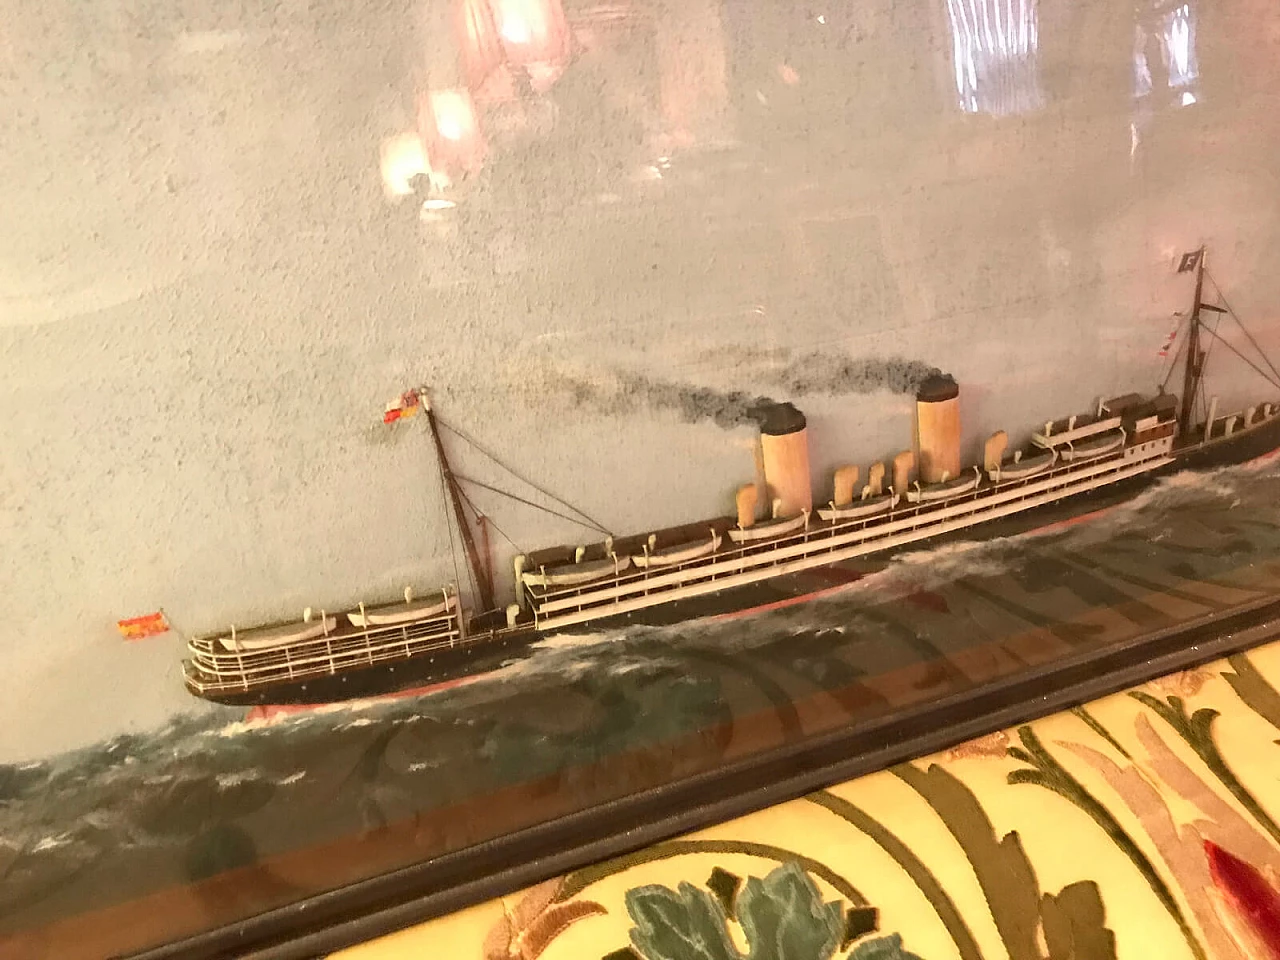 Ship's diorama 4